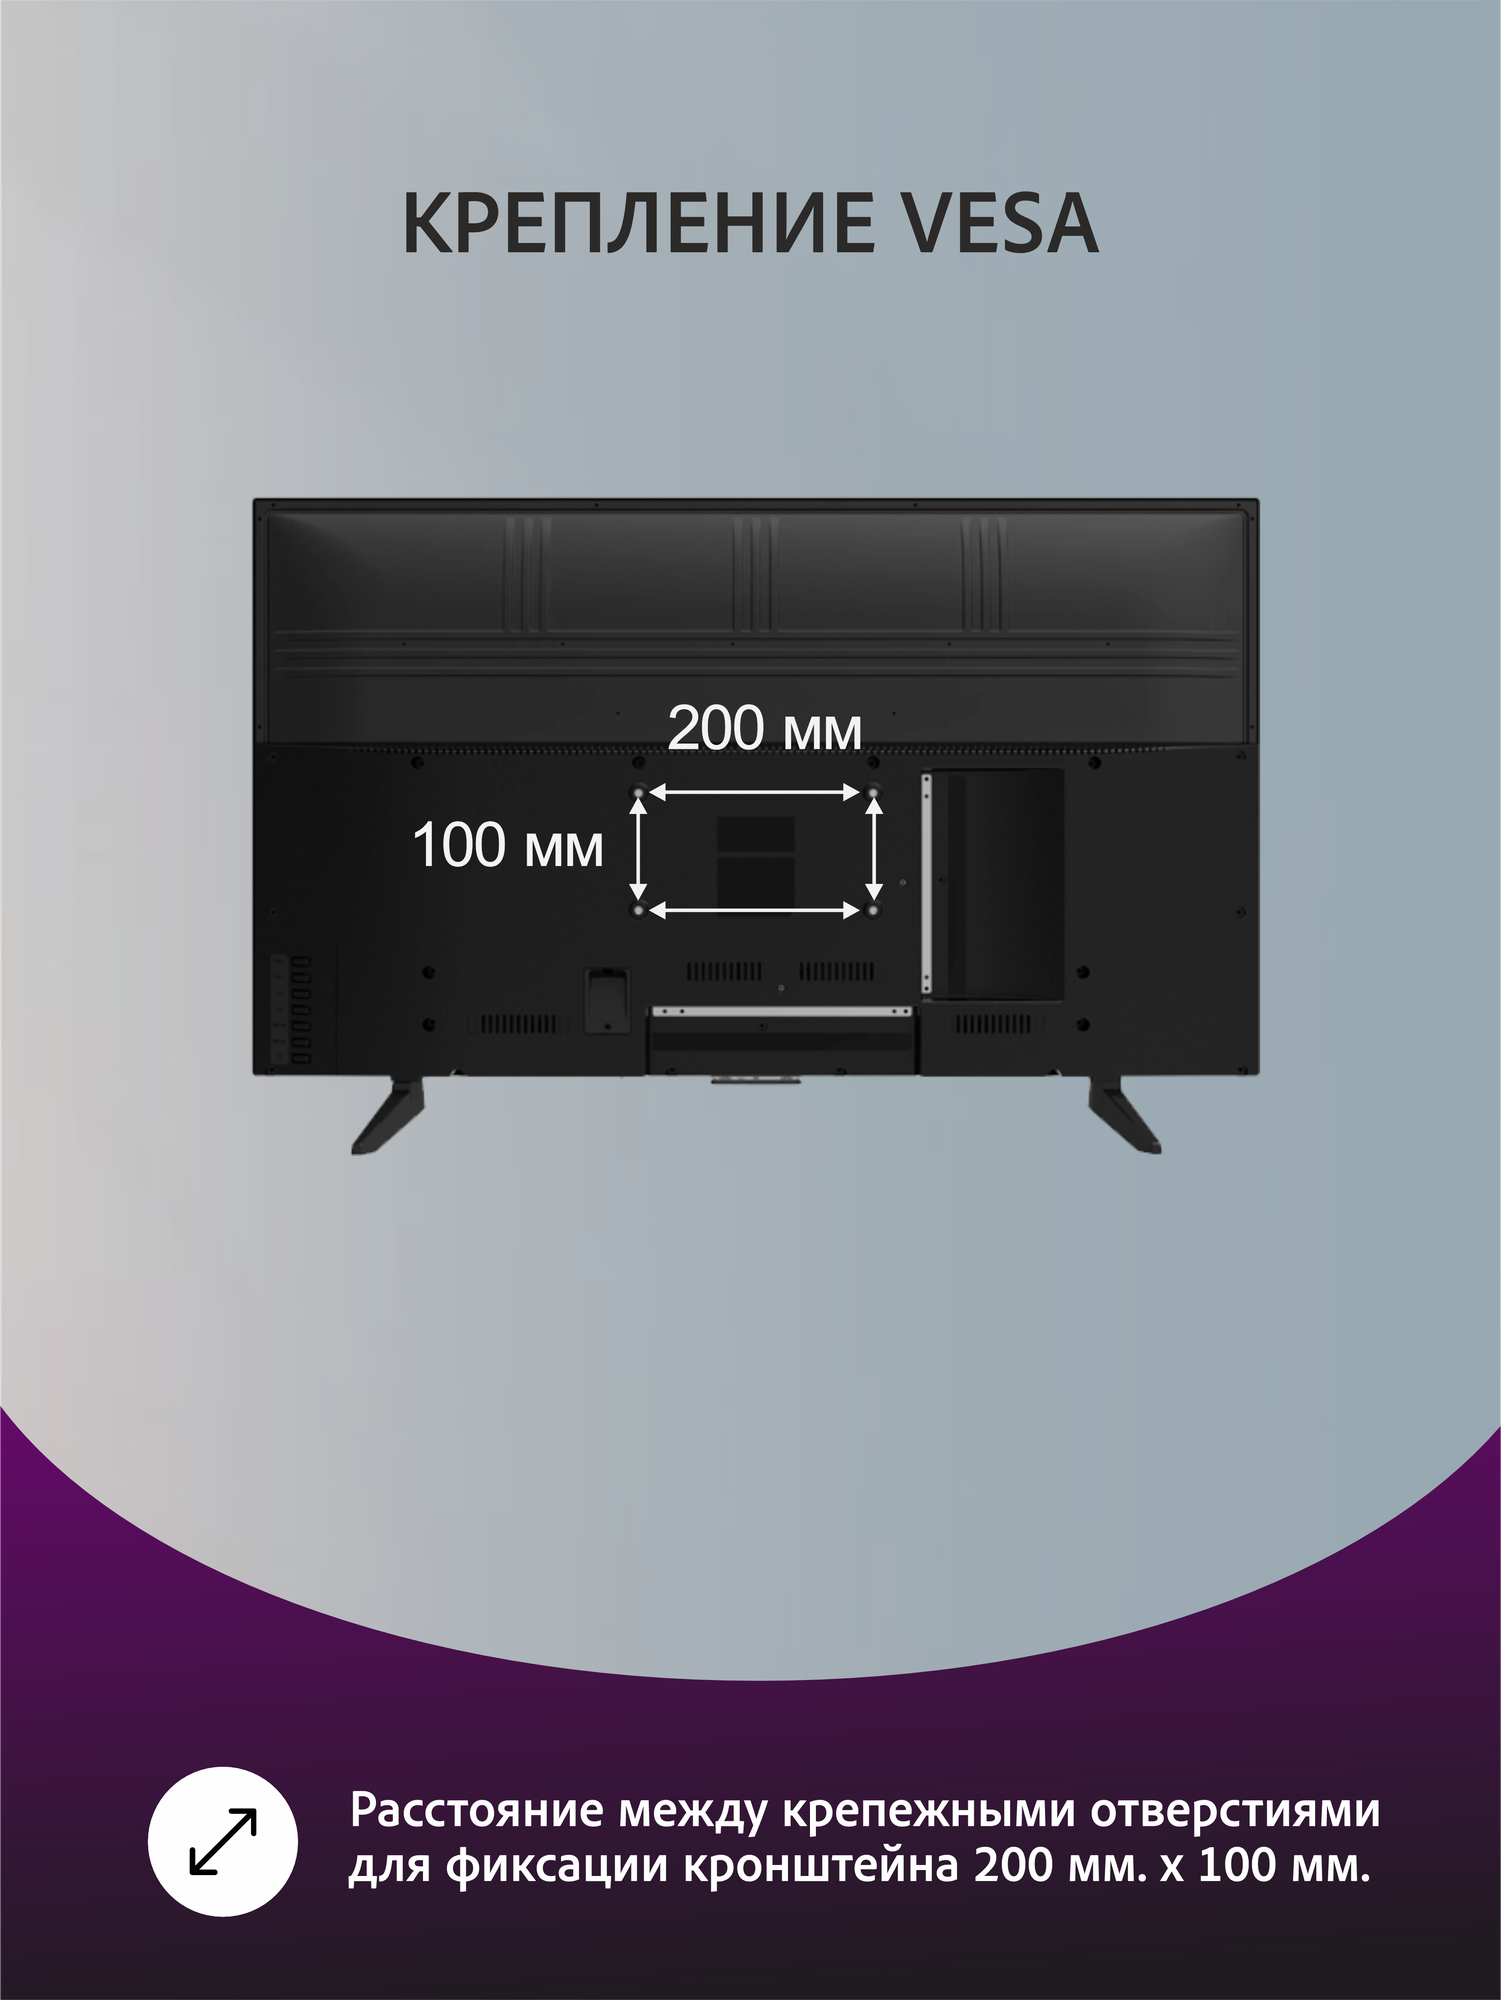 43" Телевизор Leff 43F520T 2020 LED HDR OLED